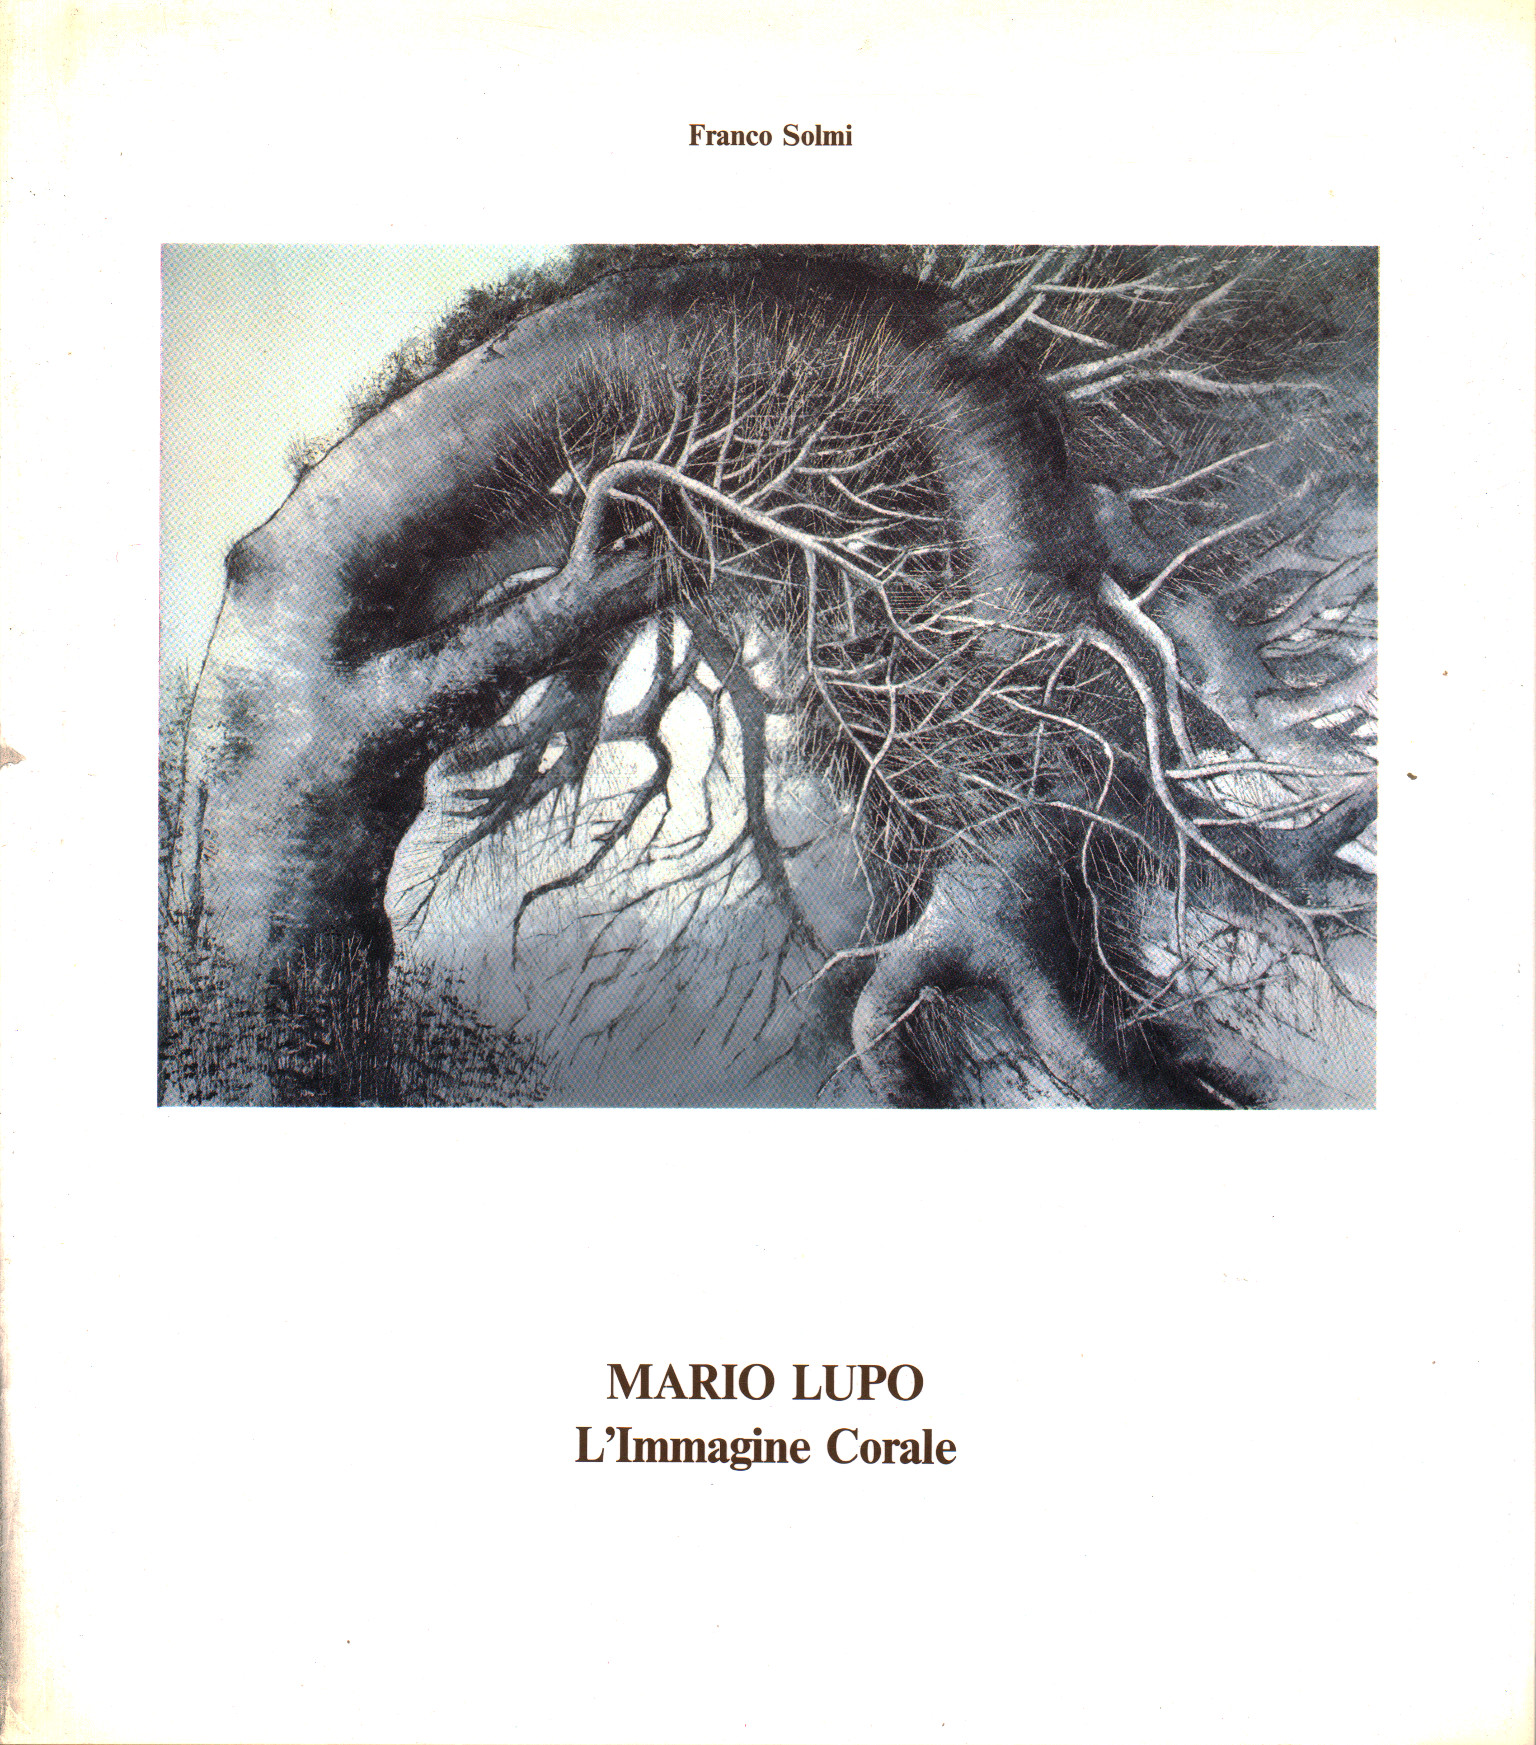 Mario Lupo - L'immagine Corale / L'Image Chorale, Franco Solmi